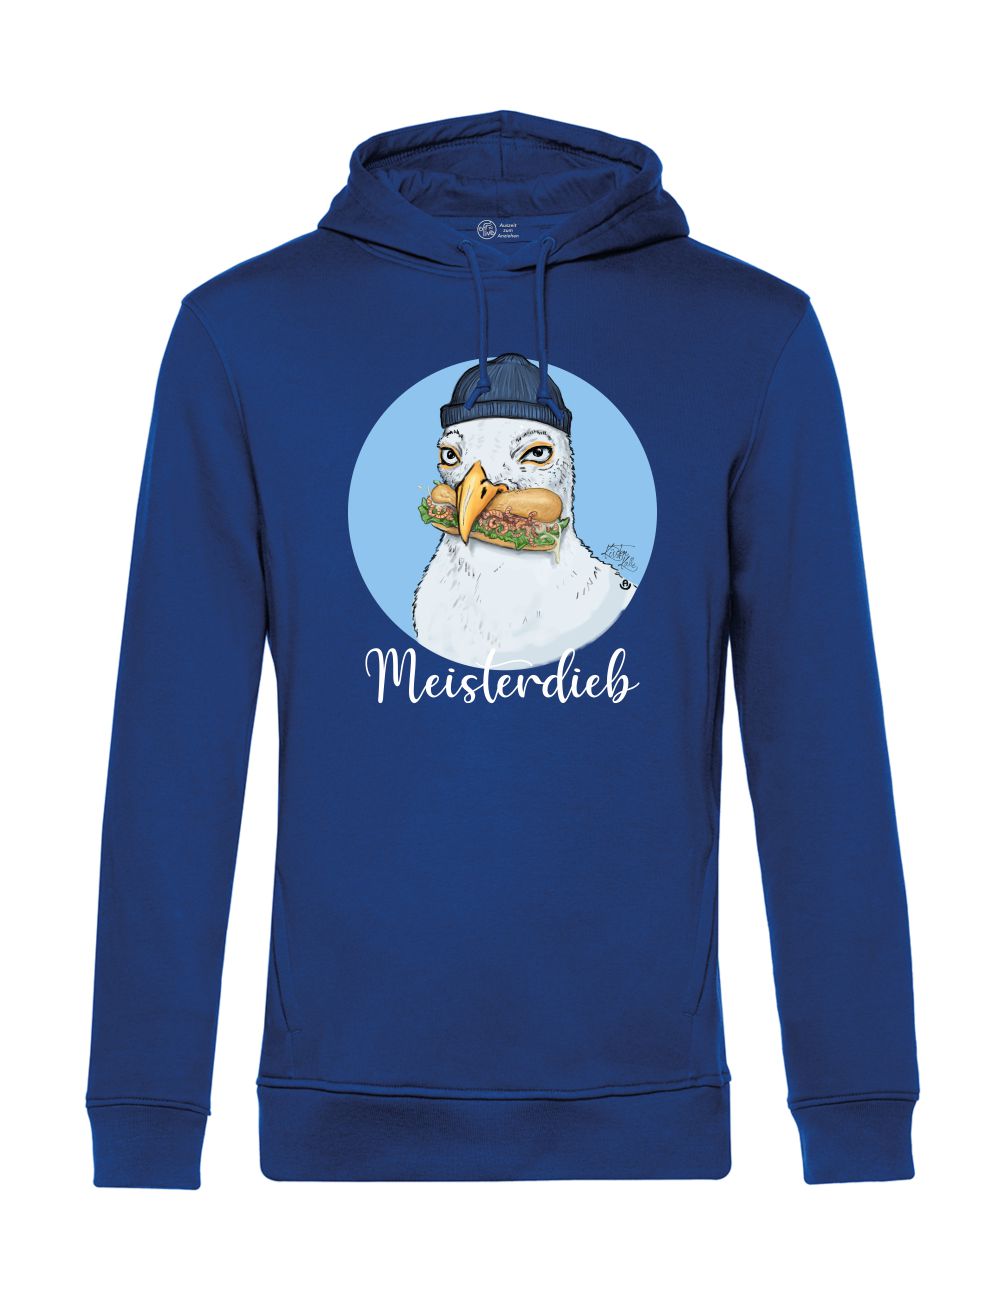 Küstenkalle Meisterdieb Hoodie navy Zeichnung einer Möwe mit einem Fischbrötchen Kapuzensweater blau lustig maritim moin möwen